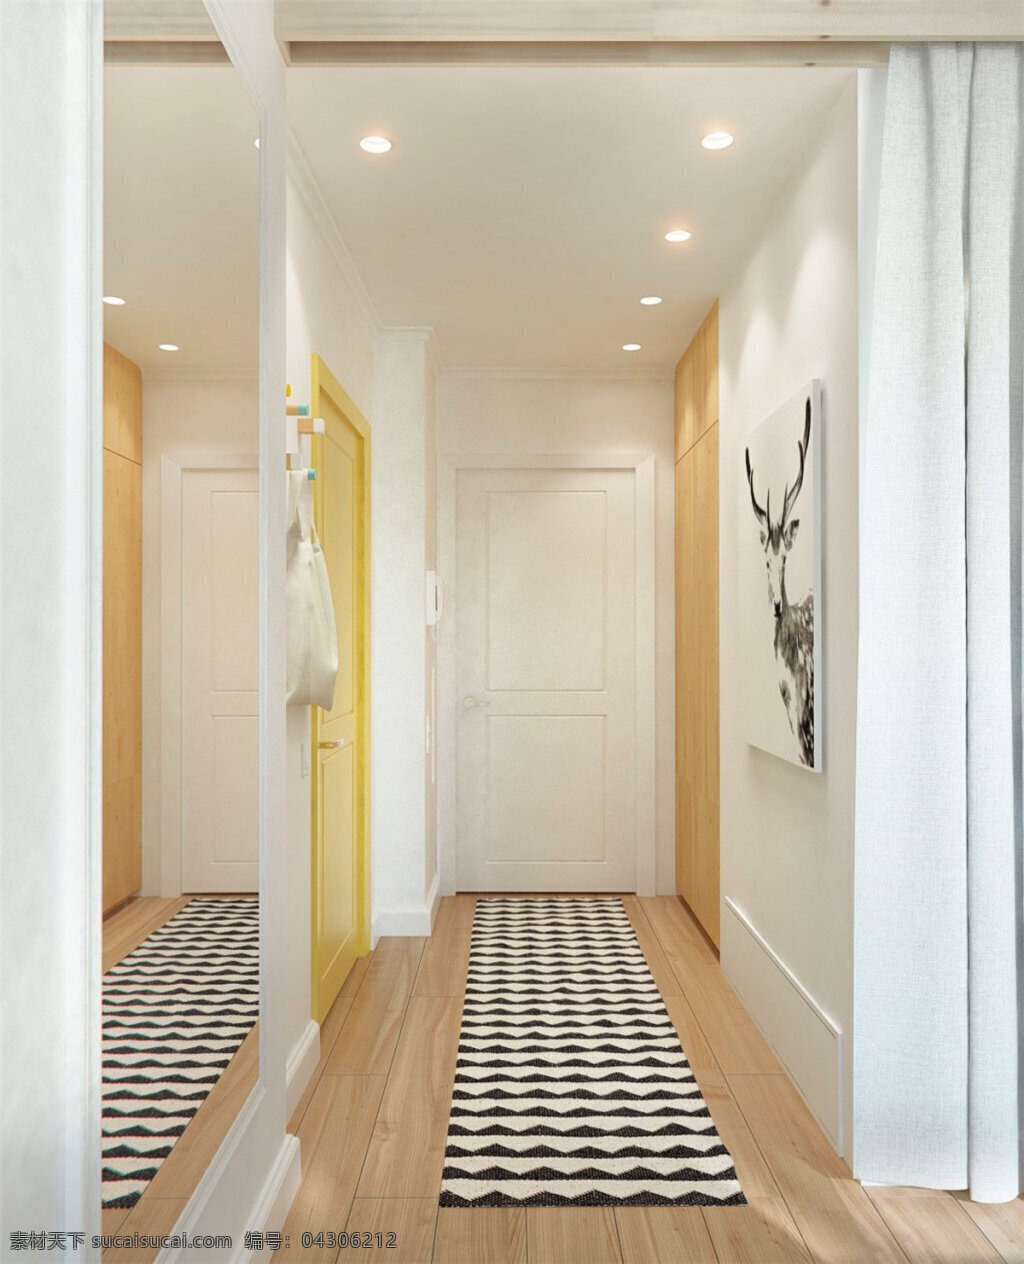 现代 时尚 客厅 走廊 黑白 波浪 地毯 室内装修 图 波浪地毯 客厅装修 木地板 浅色背景墙